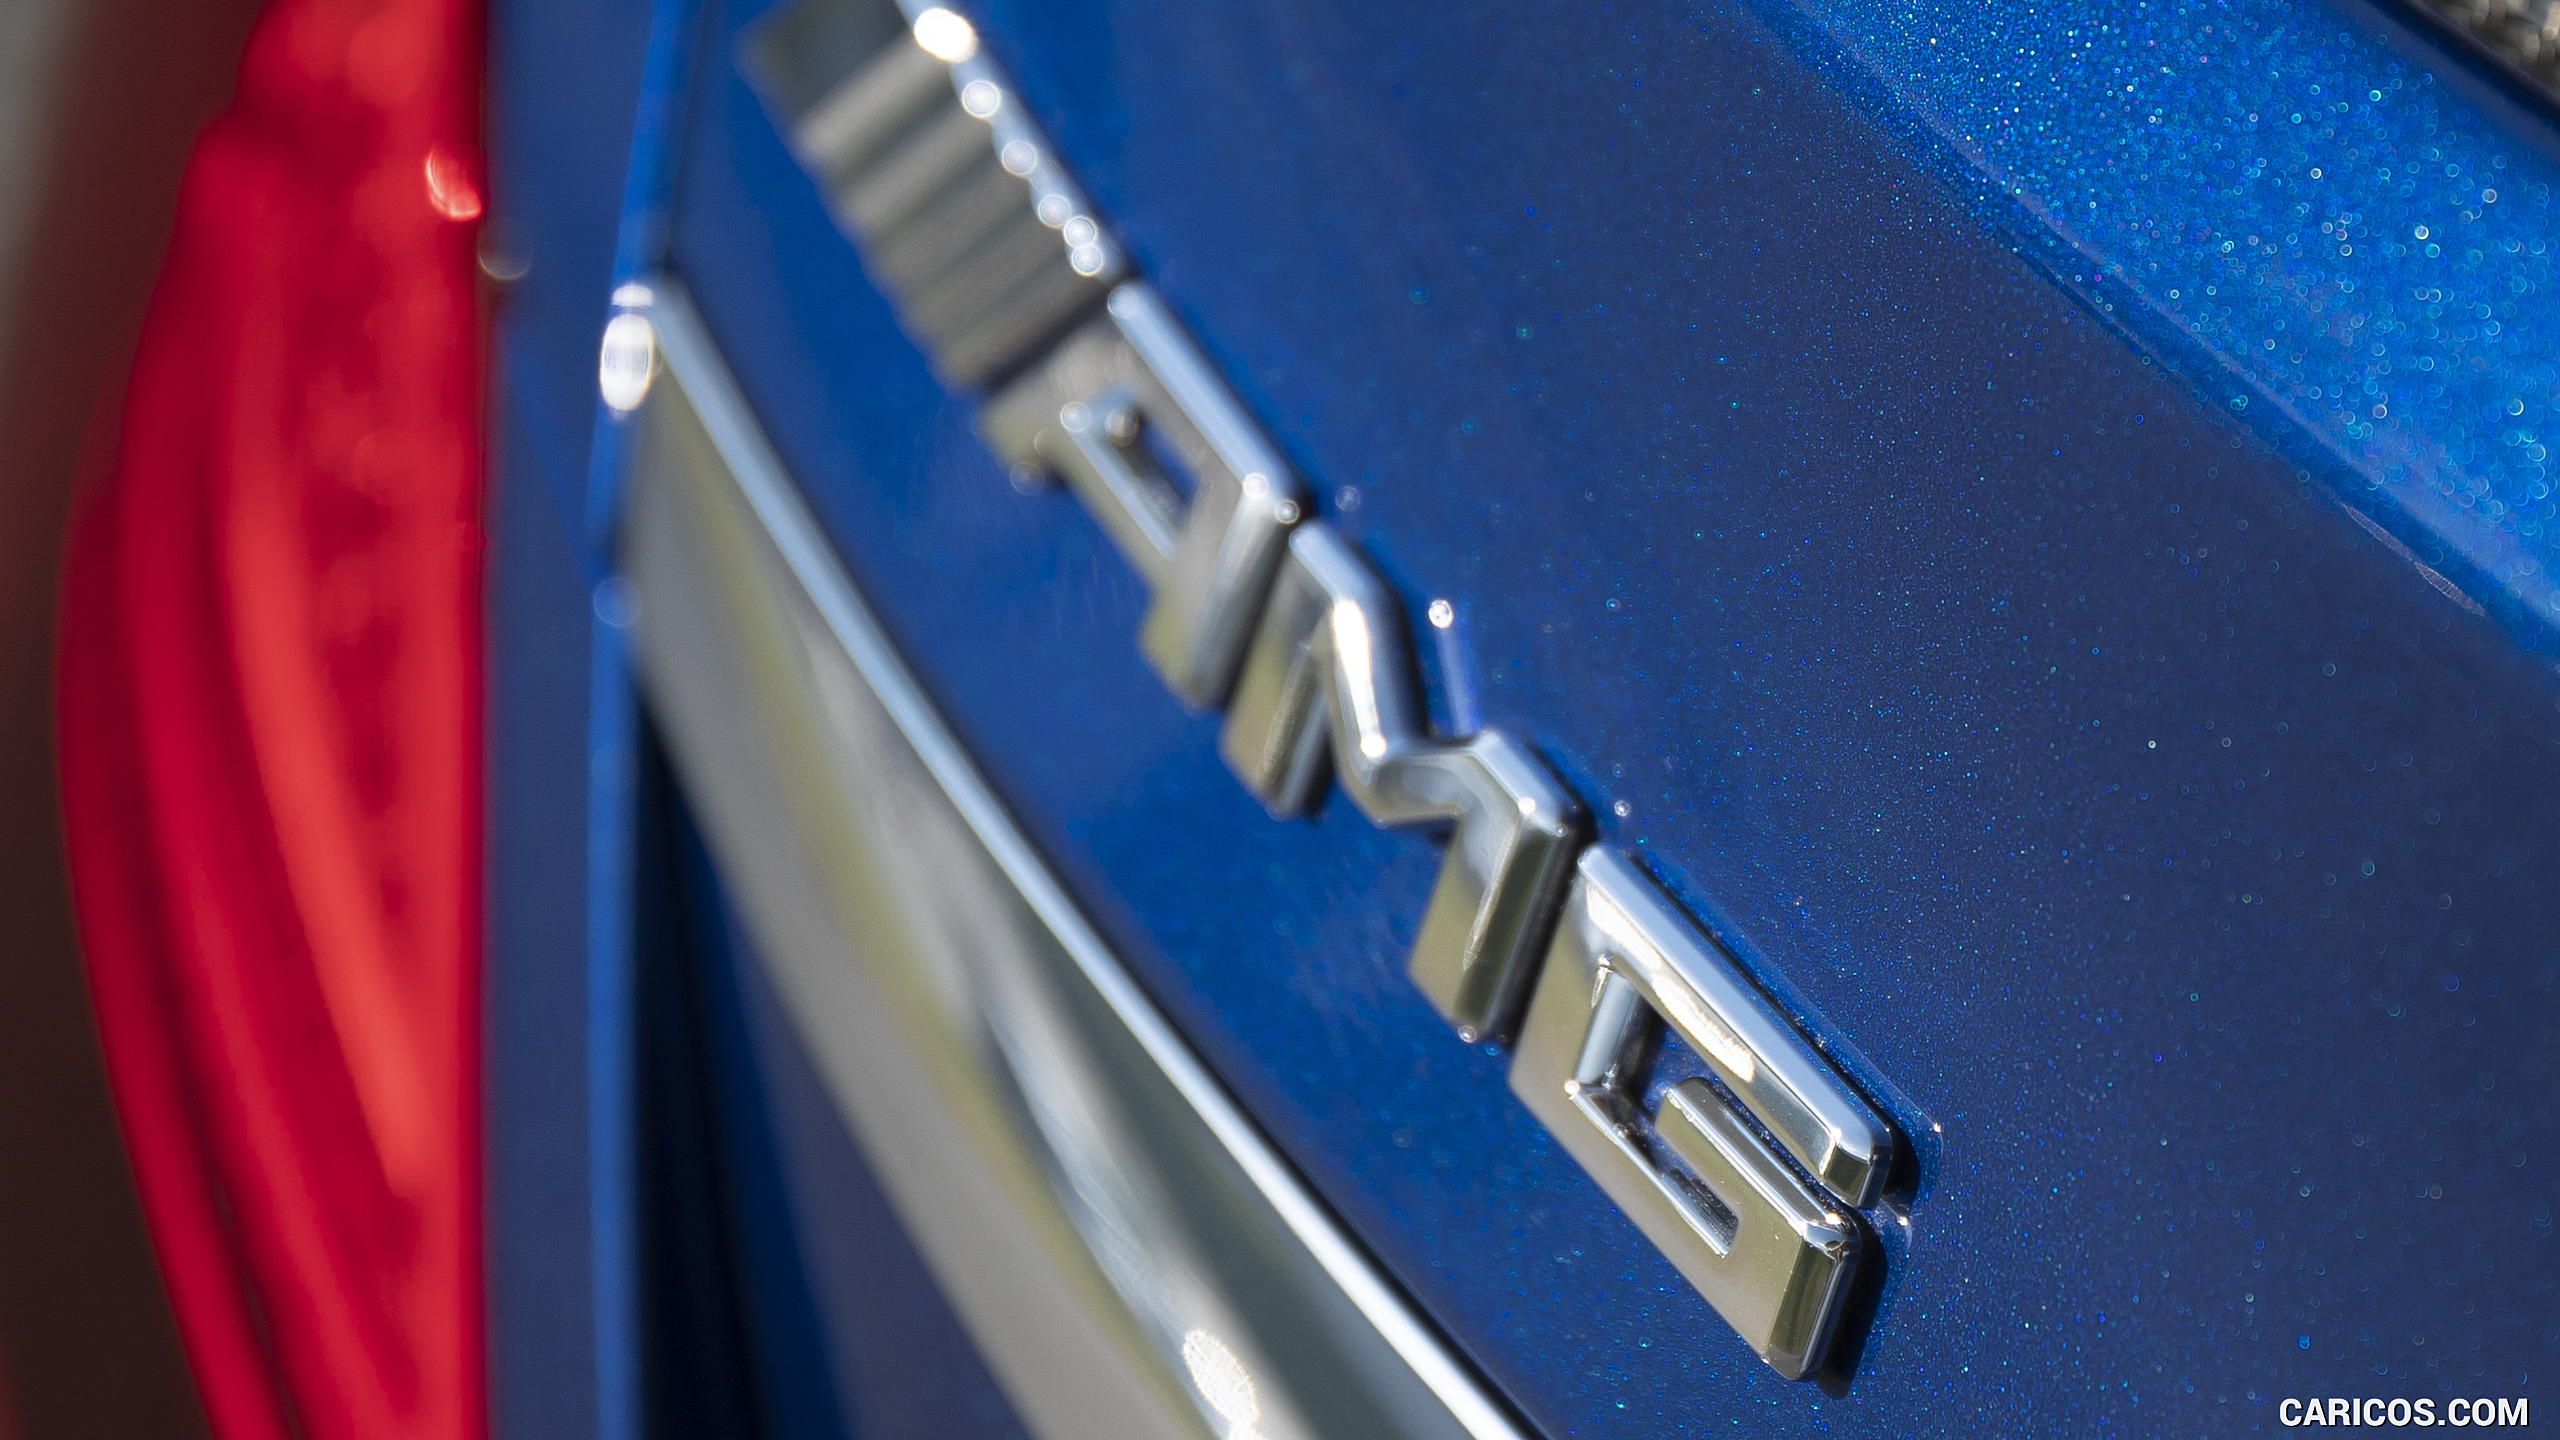 2019 Mercedes-AMG C 63 Sedan (Color: Brilliant Blue Metallic) - Badge, #47 of 115